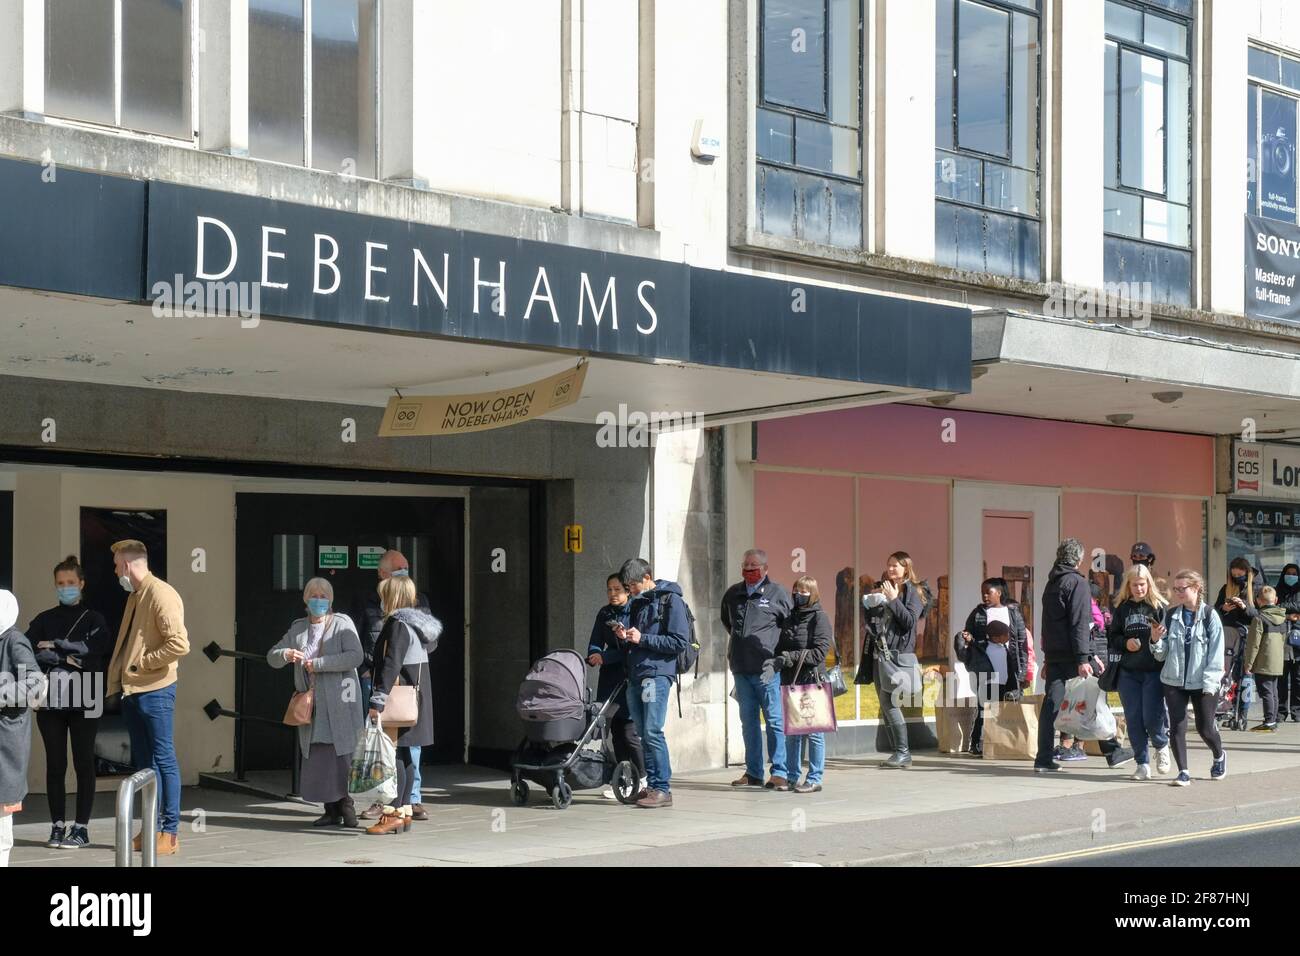 Broadmead, Bristol, Royaume-Uni. 12 avril 2021. Debenhams est ouvert pour une journée seulement. Les magasins non essentiels sont autorisés à ouvrir en Angleterre. Les gens font la queue à l'extérieur de leurs points de vente préférés dans le quartier commercial Broadmead de Bristol. Crédit : JMF News/Alay Live News Banque D'Images